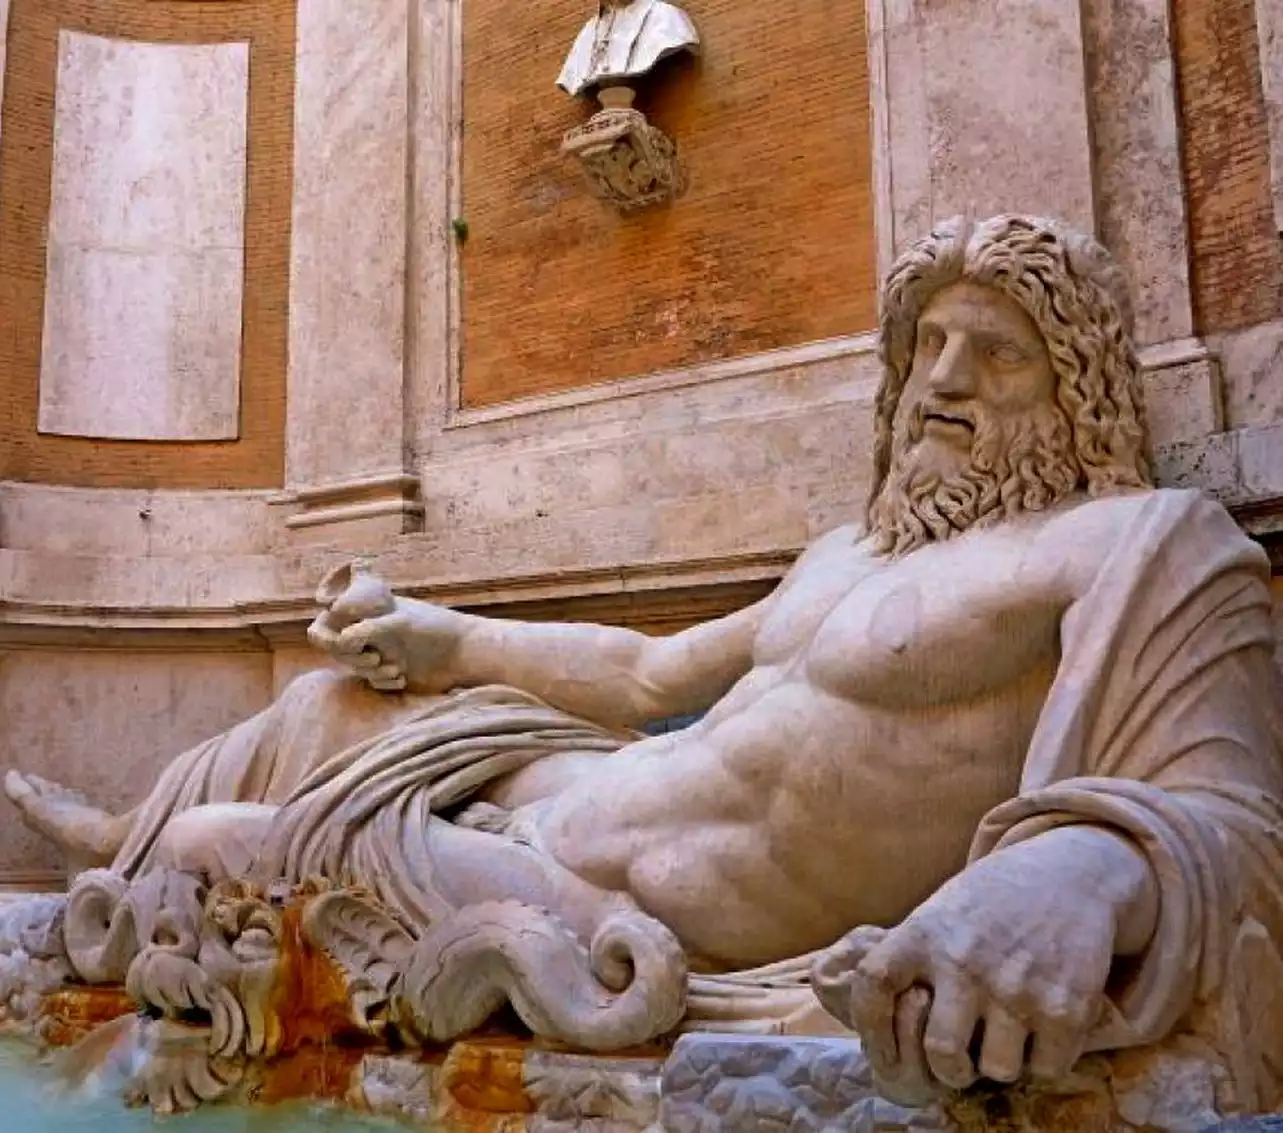 Ποσειδώνας ξαπλωμένος: Το μαρμάρινο άγαλμα του αρχαίου ελληνικού θεού της θάλασσας απεικονίζεται ξαπλωμένος σε κλίνη με γυμνό το στήθος και χιτώνα που καλύπτει το κάτω μέρος του σώματός του.